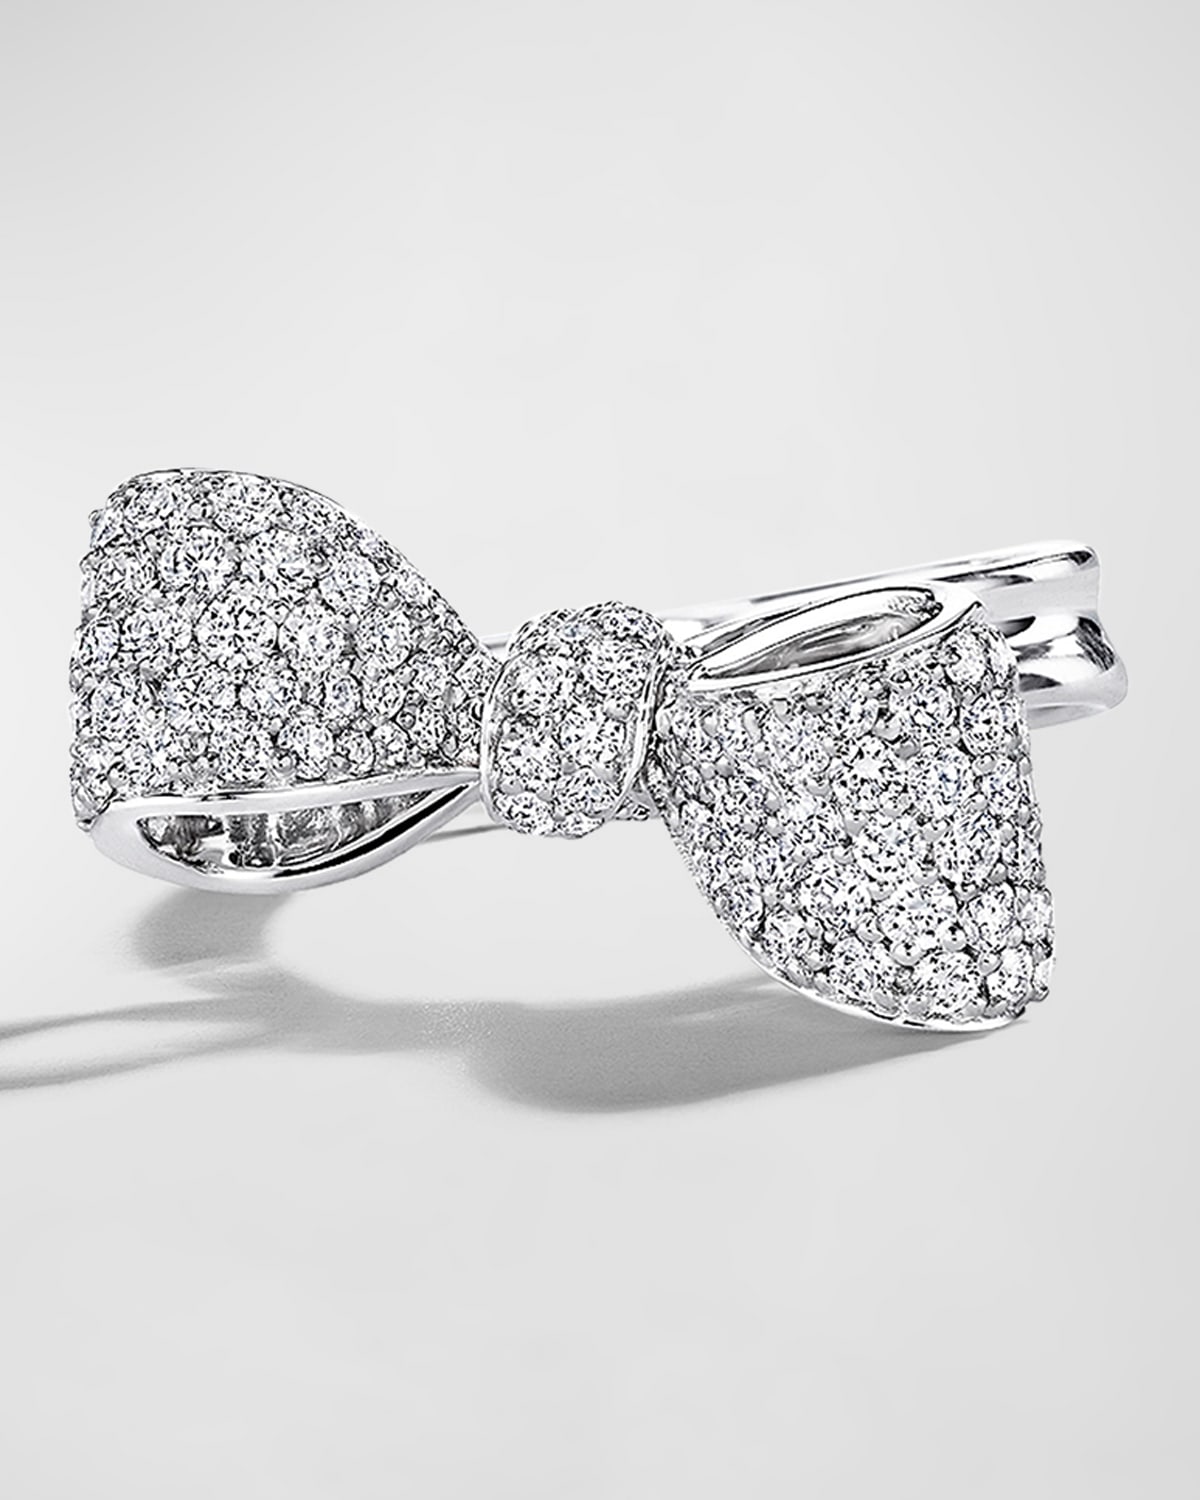 Mimi So Bow 18k White Gold White Diamond Bow Ring, Size 6